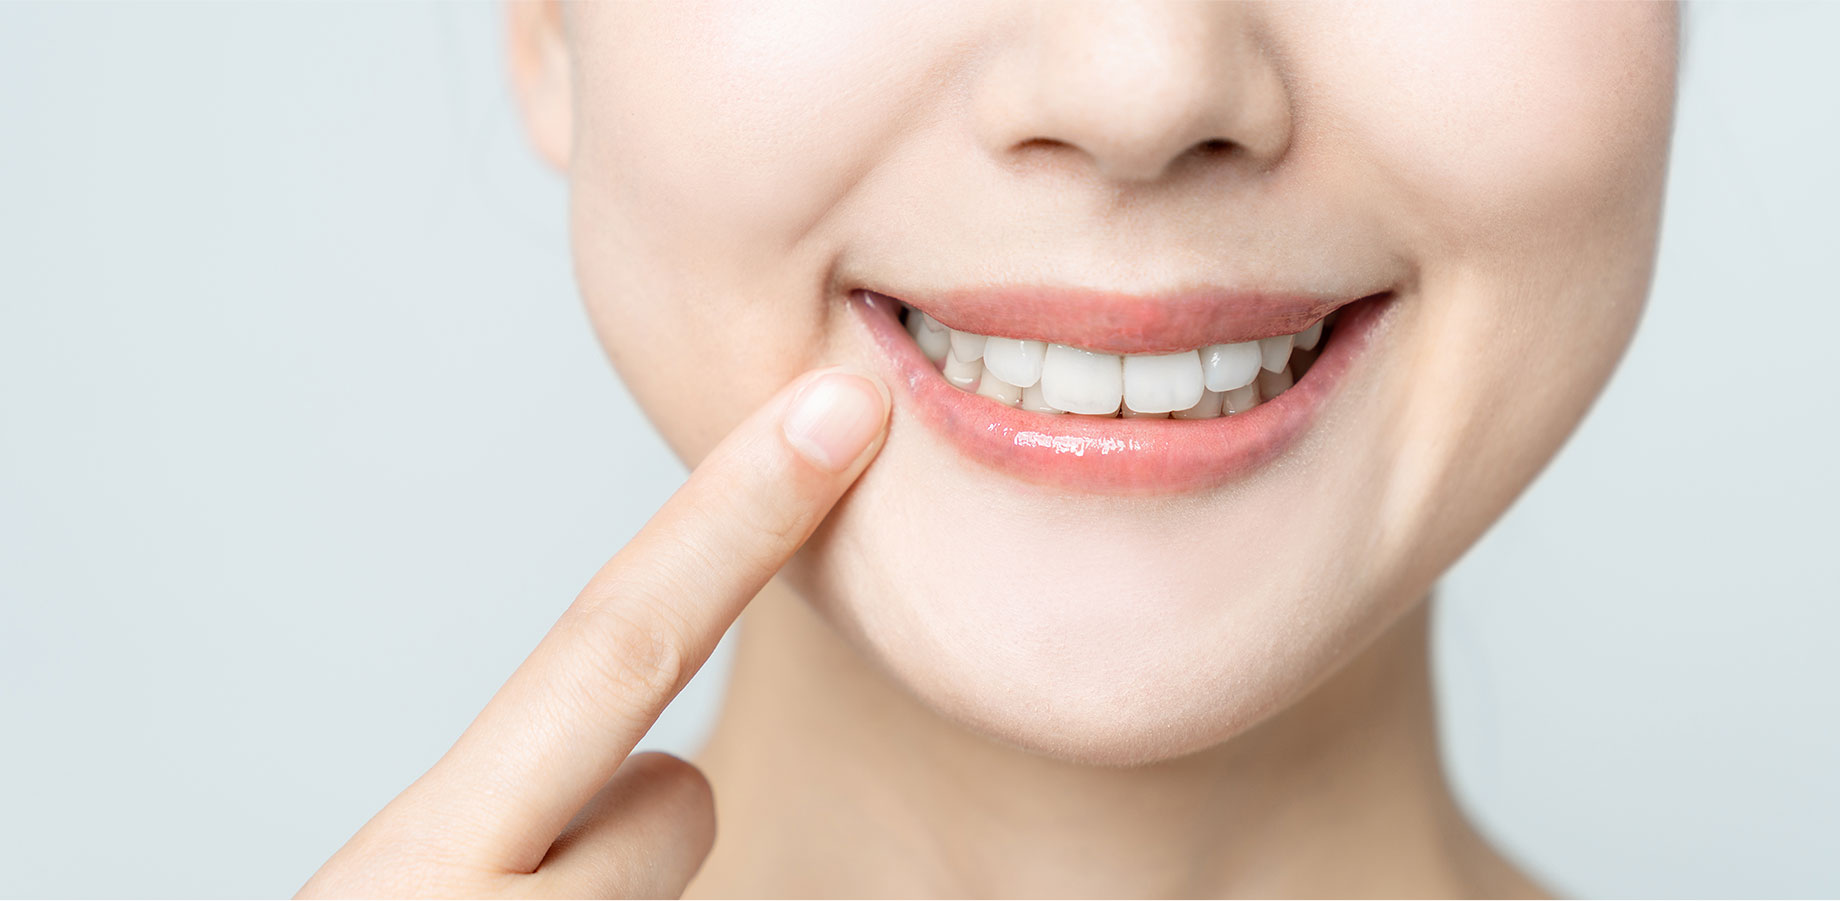 矯正歯科は、歯並びや噛み合わせをきれいにするための歯科治療です。